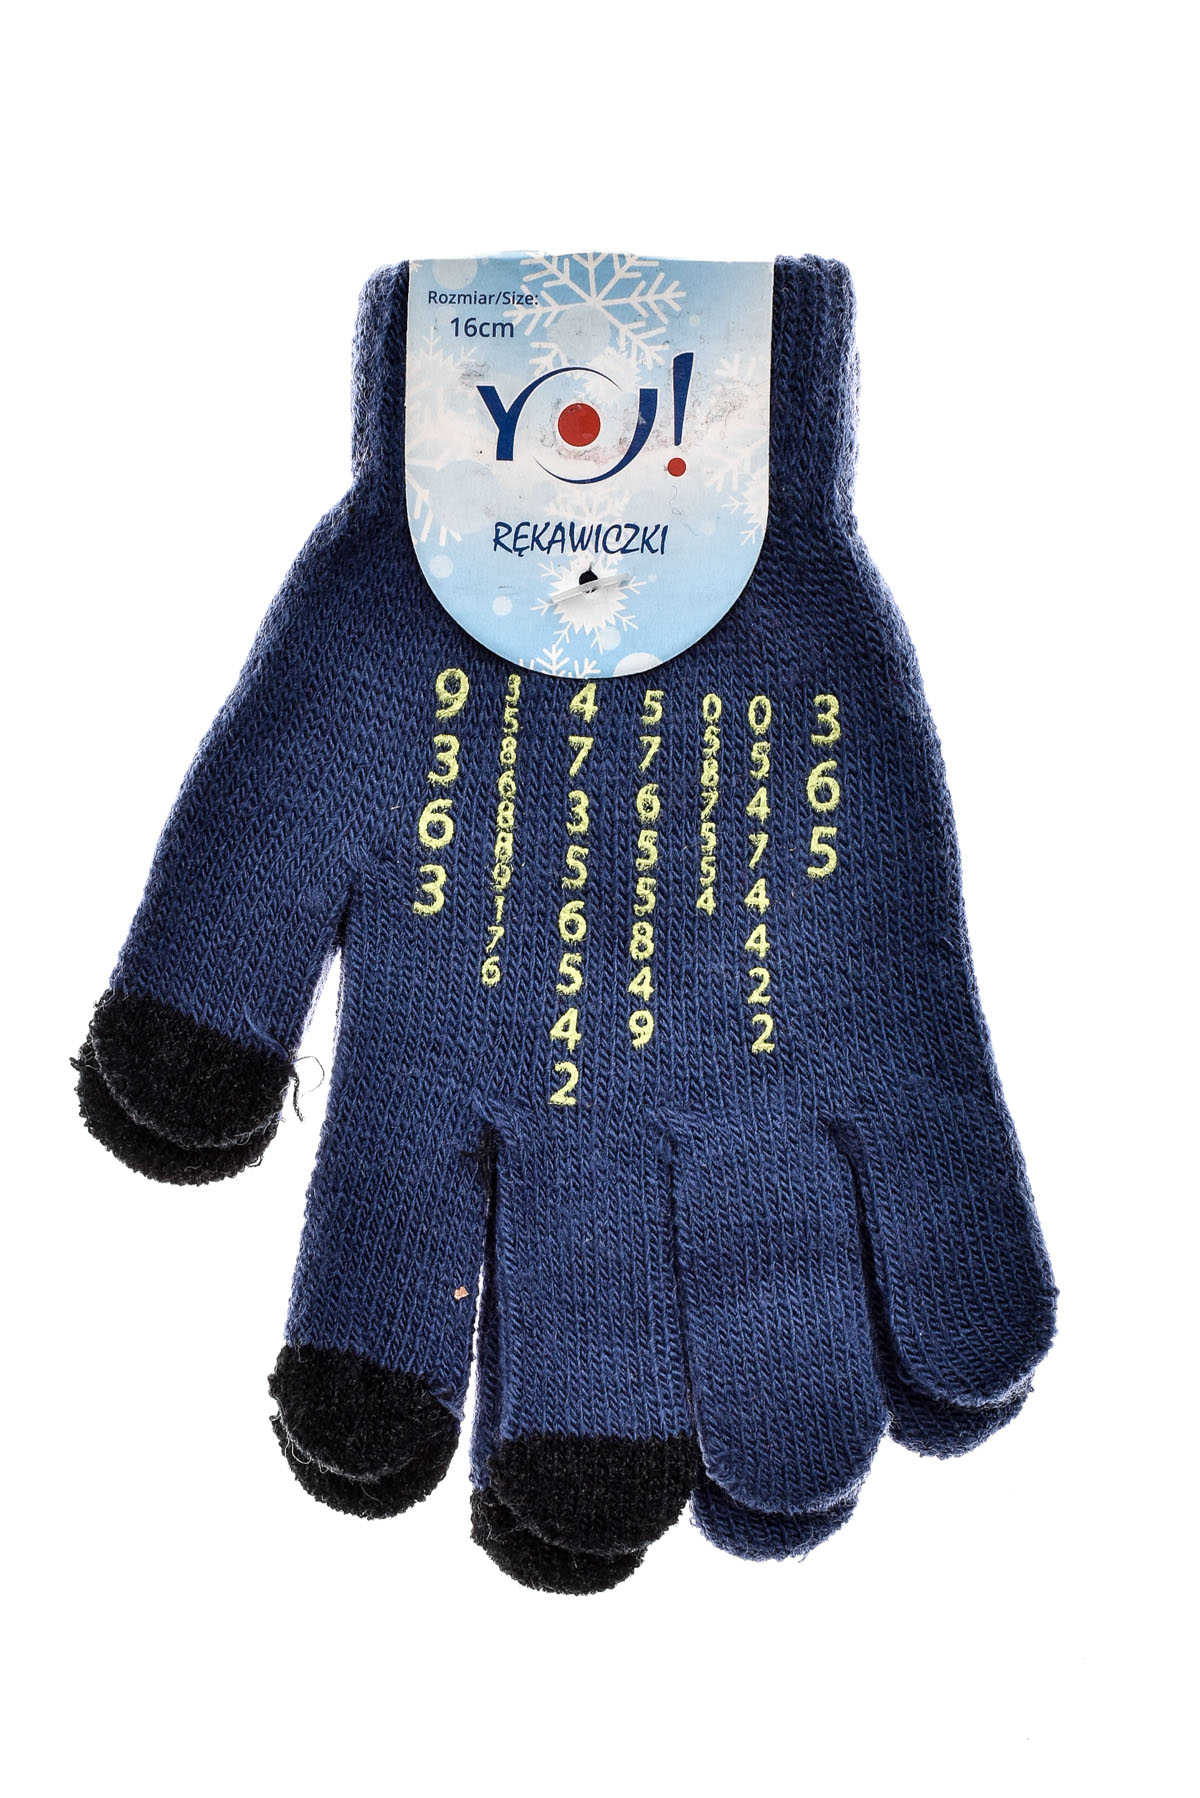 Rękawiczki dziecięce - YO! club - 0